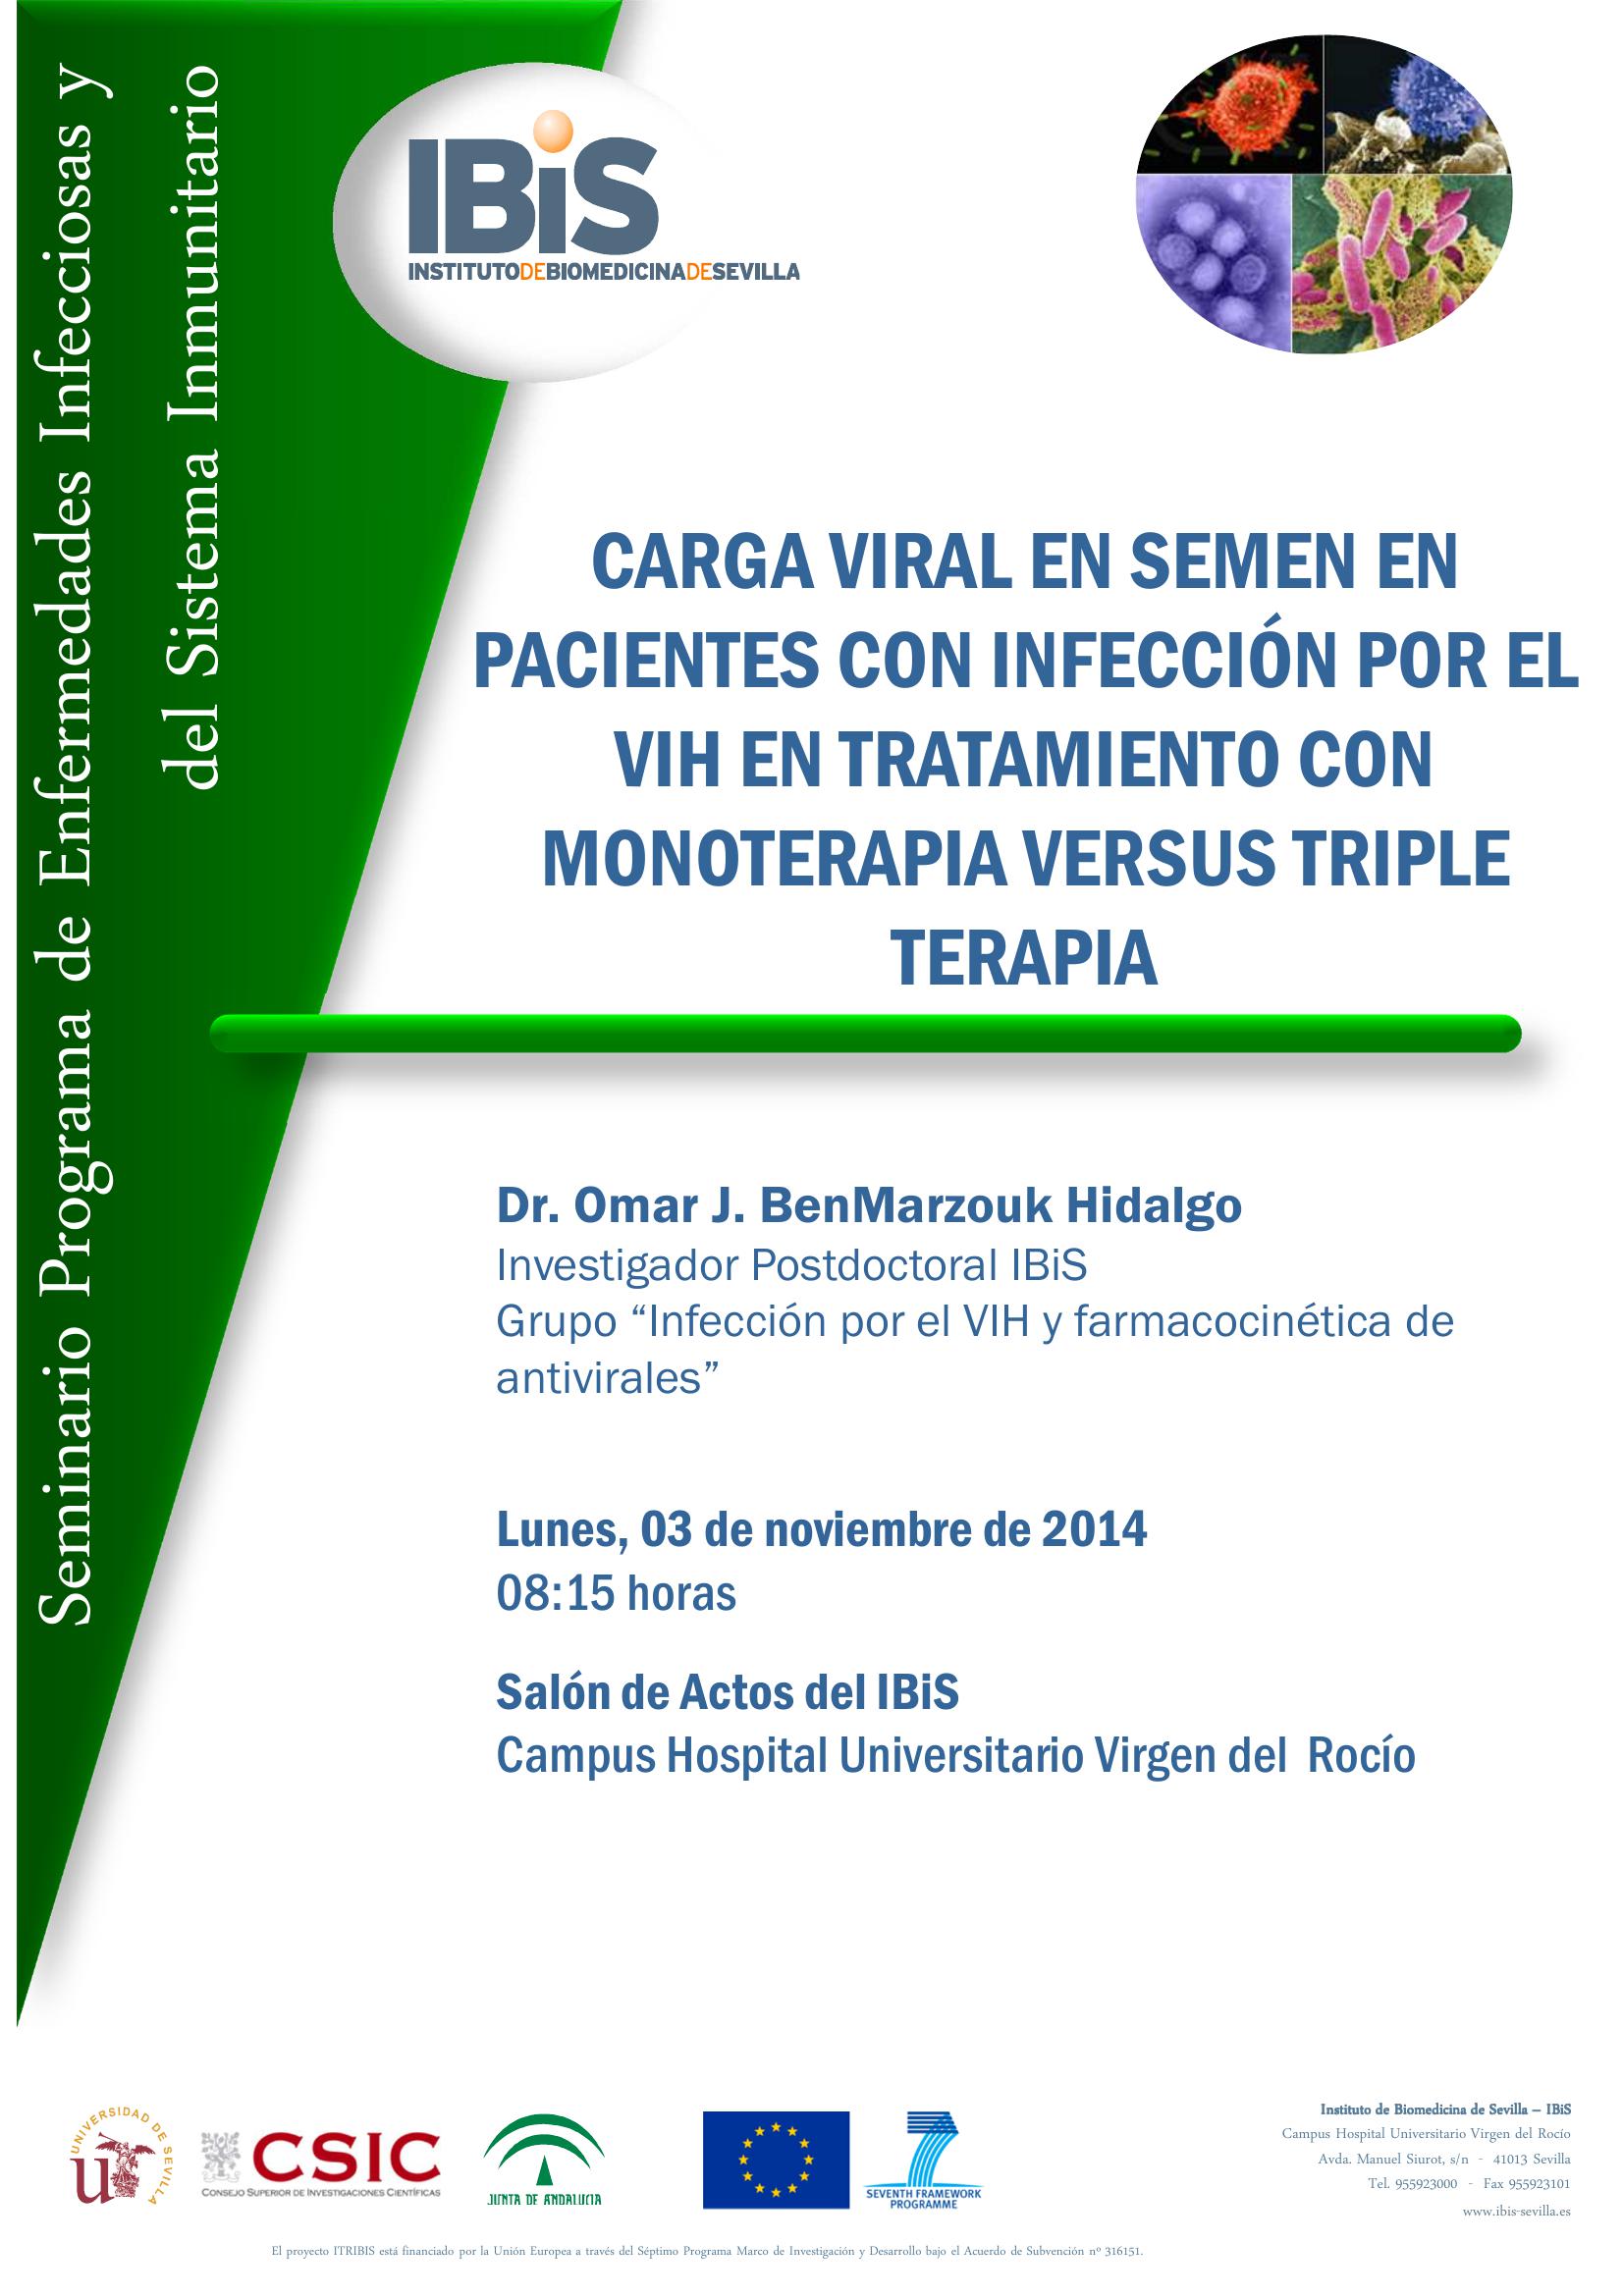 Poster: CARGA VIRAL EN SEMEN EN PACIENTES CON INFECCIÓN POR EL VIH EN TRATAMIENTO CON MONOTERAPIA VERSUS TRIPLE TERAPIA